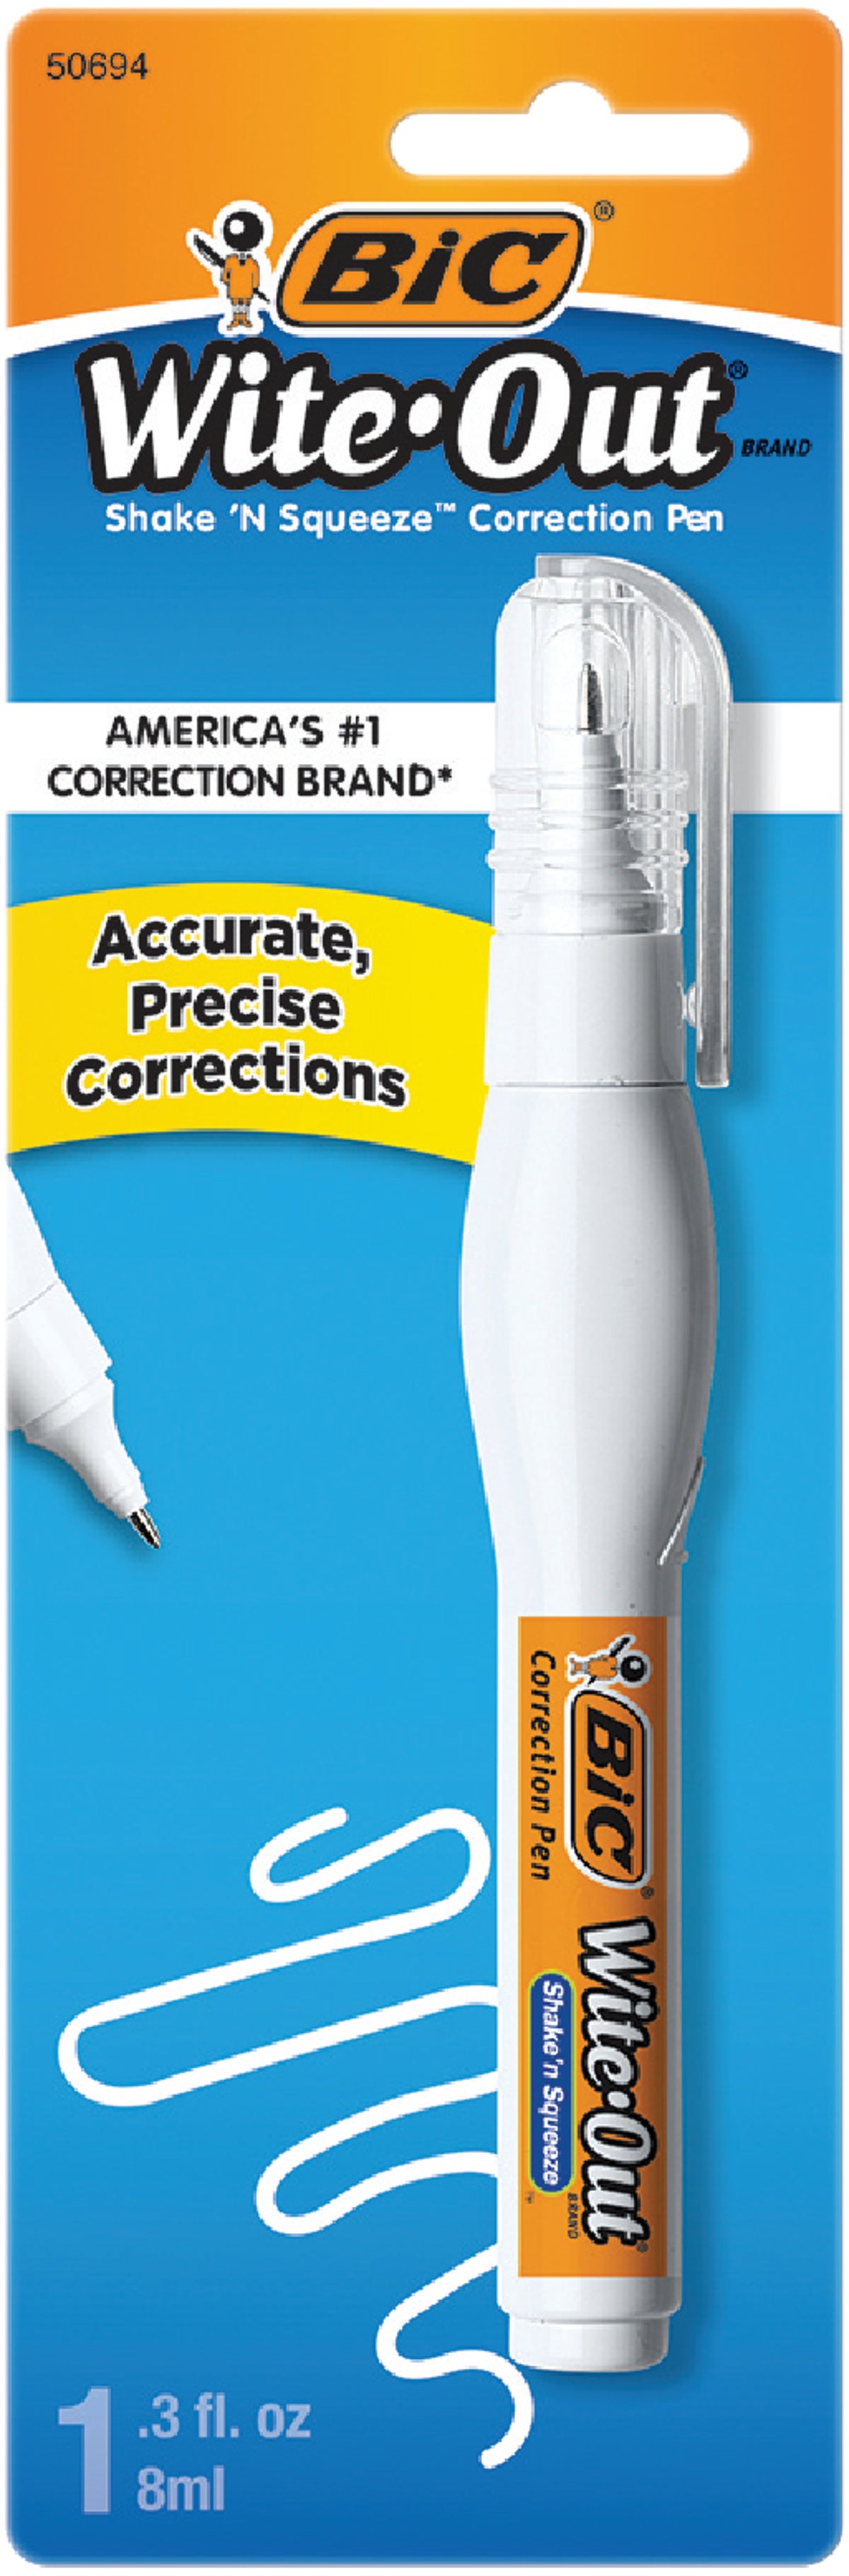 Correction Pen, White Out Pen